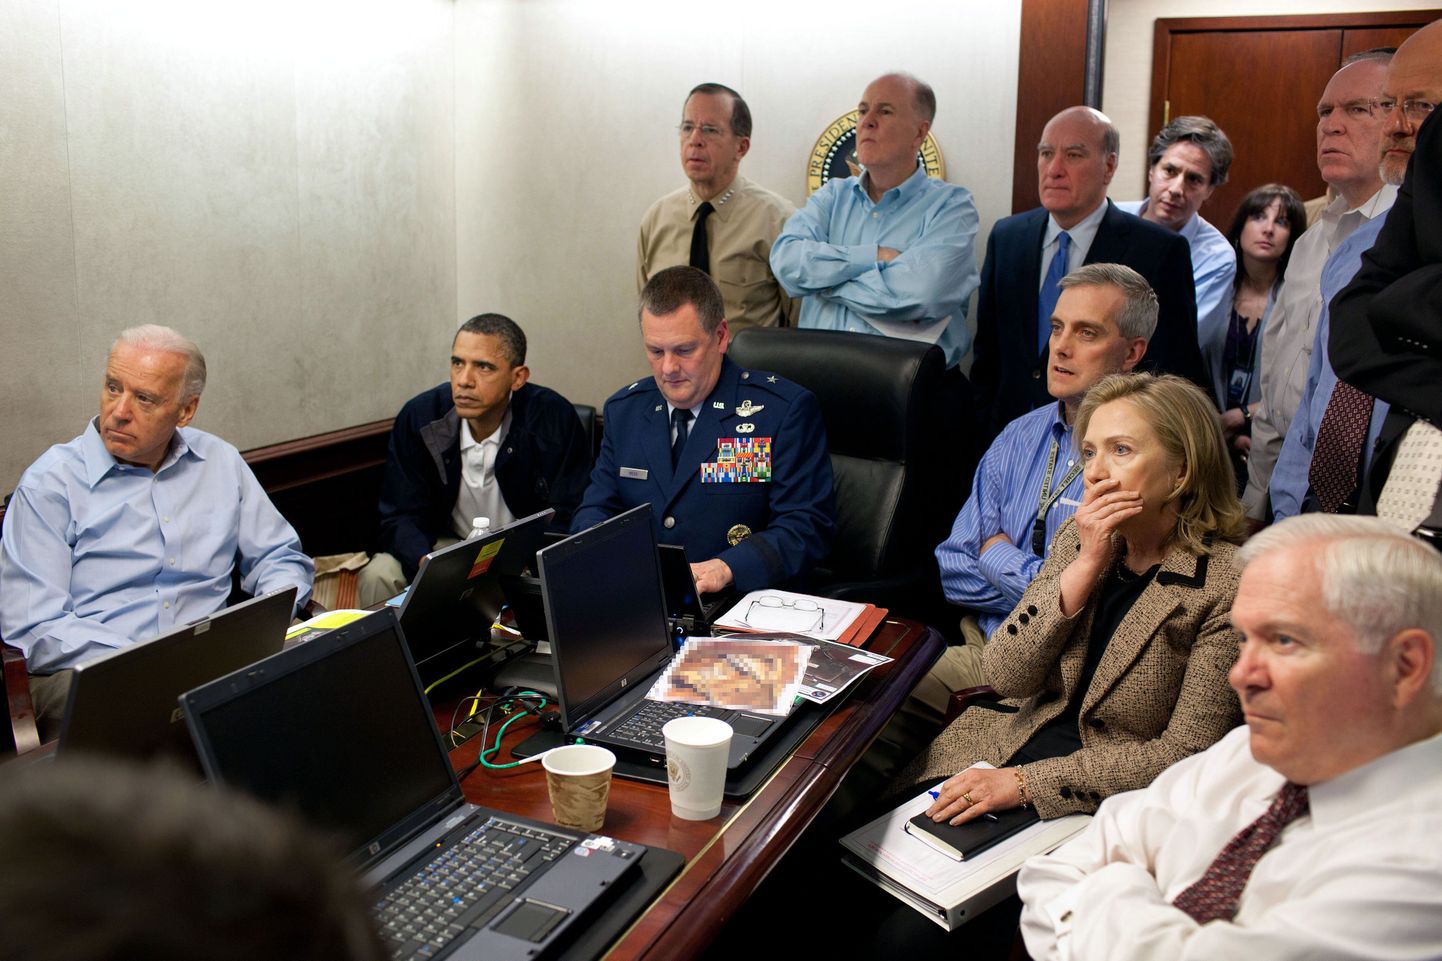 Ühendriikide juhtkond jälgimas reaalajas 40 minutit väldanud erioperatsiooni, mille käigus tapeti Osama bin Laden.